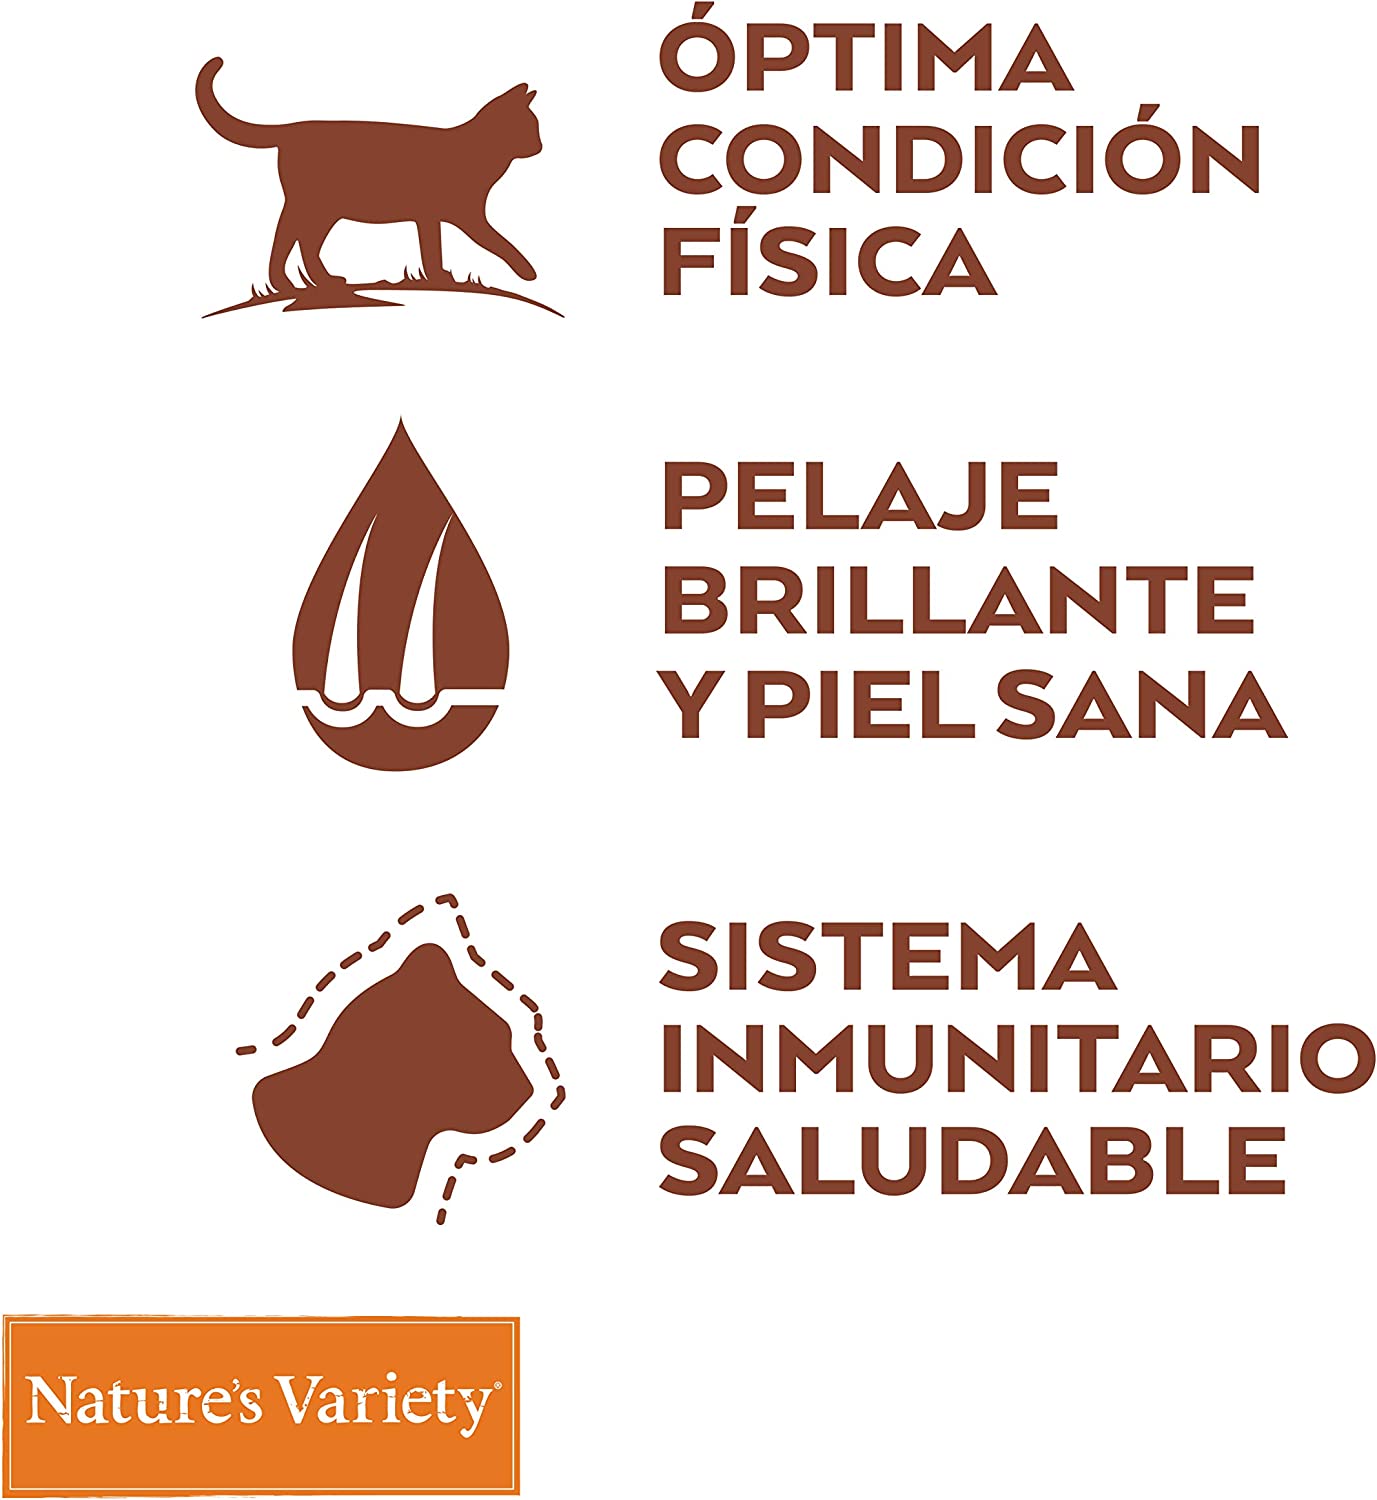 NATURE'S VARIETY SELECTED SALMÓN NORUEGO.  Gabo y Gordo Pet Shop en Las Palmas de Gran Canaria tienda para mascotas, perros, gatos, conejos, tortugas, animales, accesorios para mascotas.